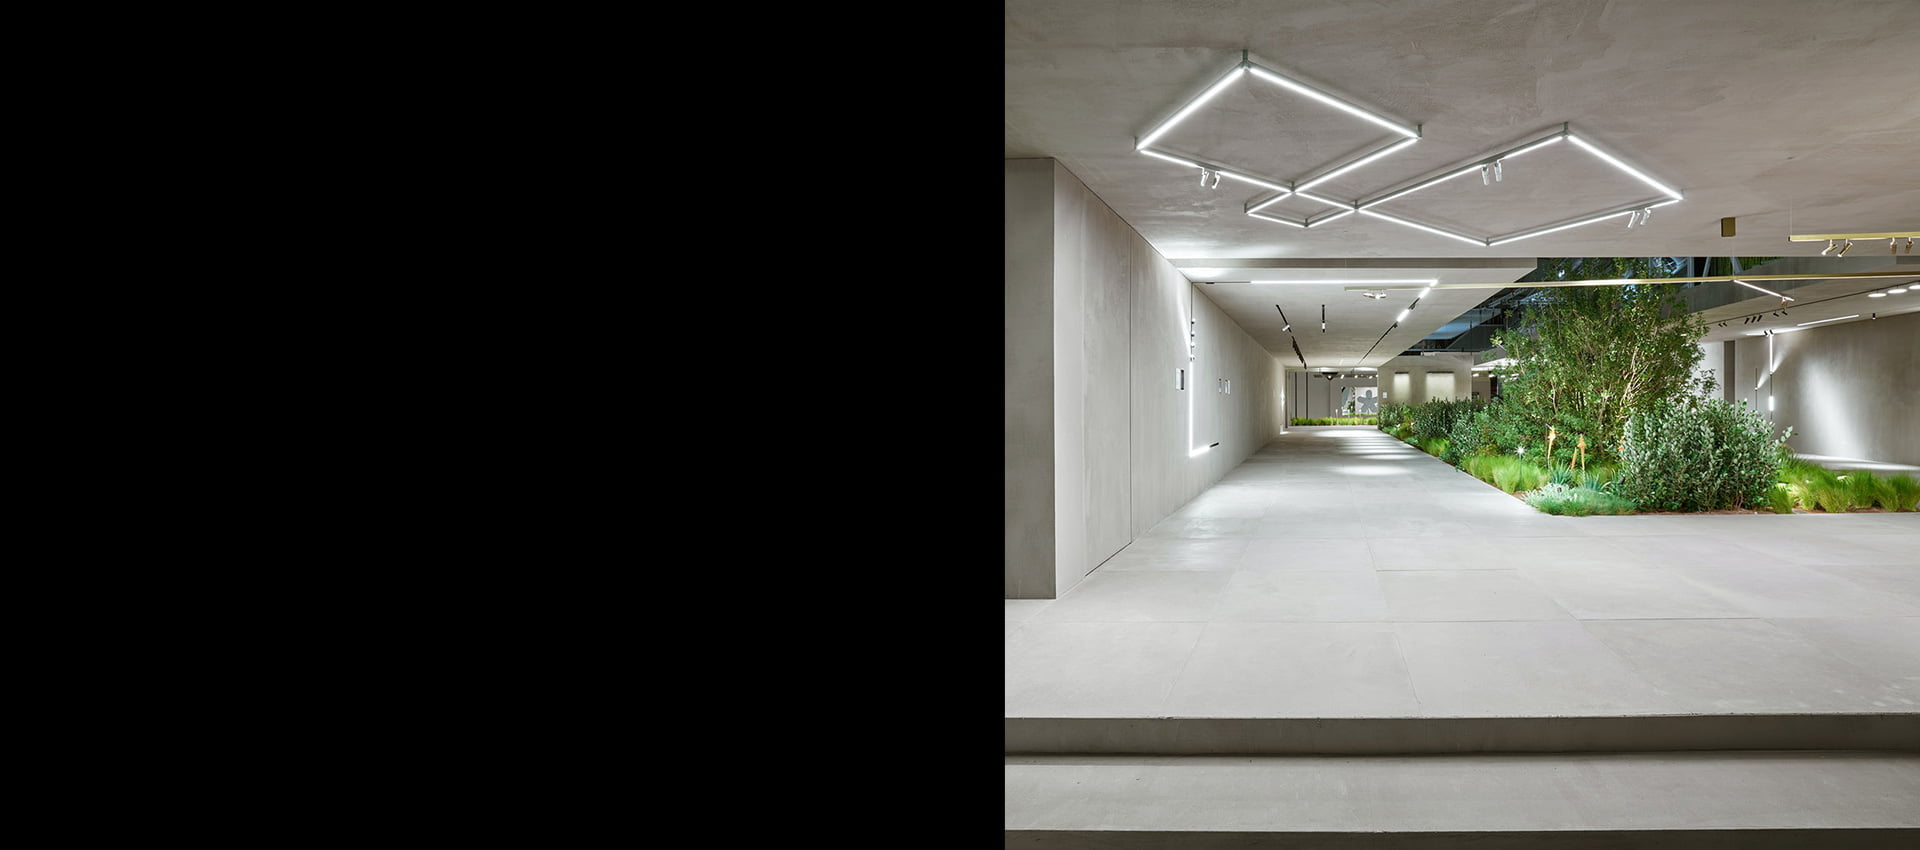 Iluminat arhitectural configurabil tavan Flos, Diversion